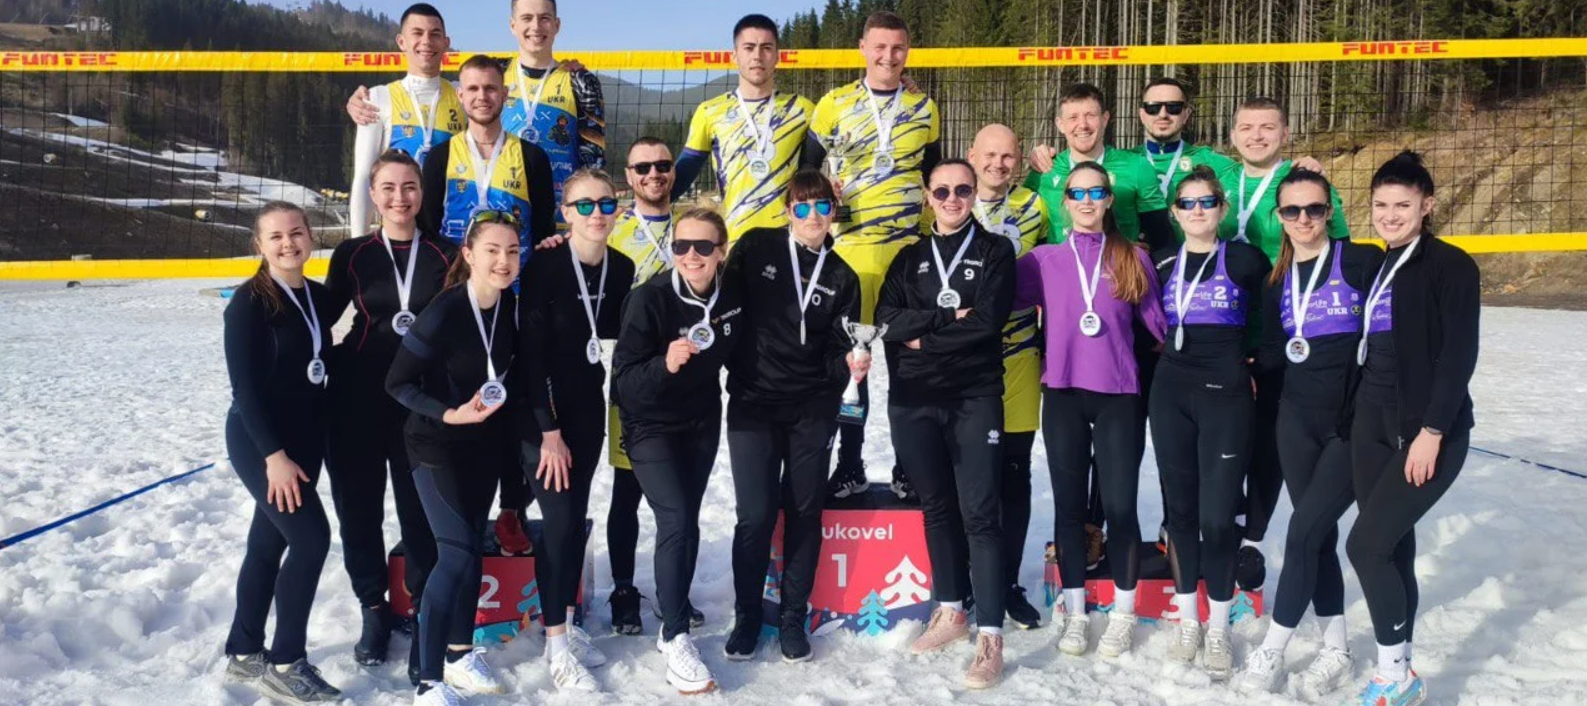 Закарпатские спортсмены добыли в борьбе "золото" на Чемпионате Украины по волейболу на снегу. Фото и видео